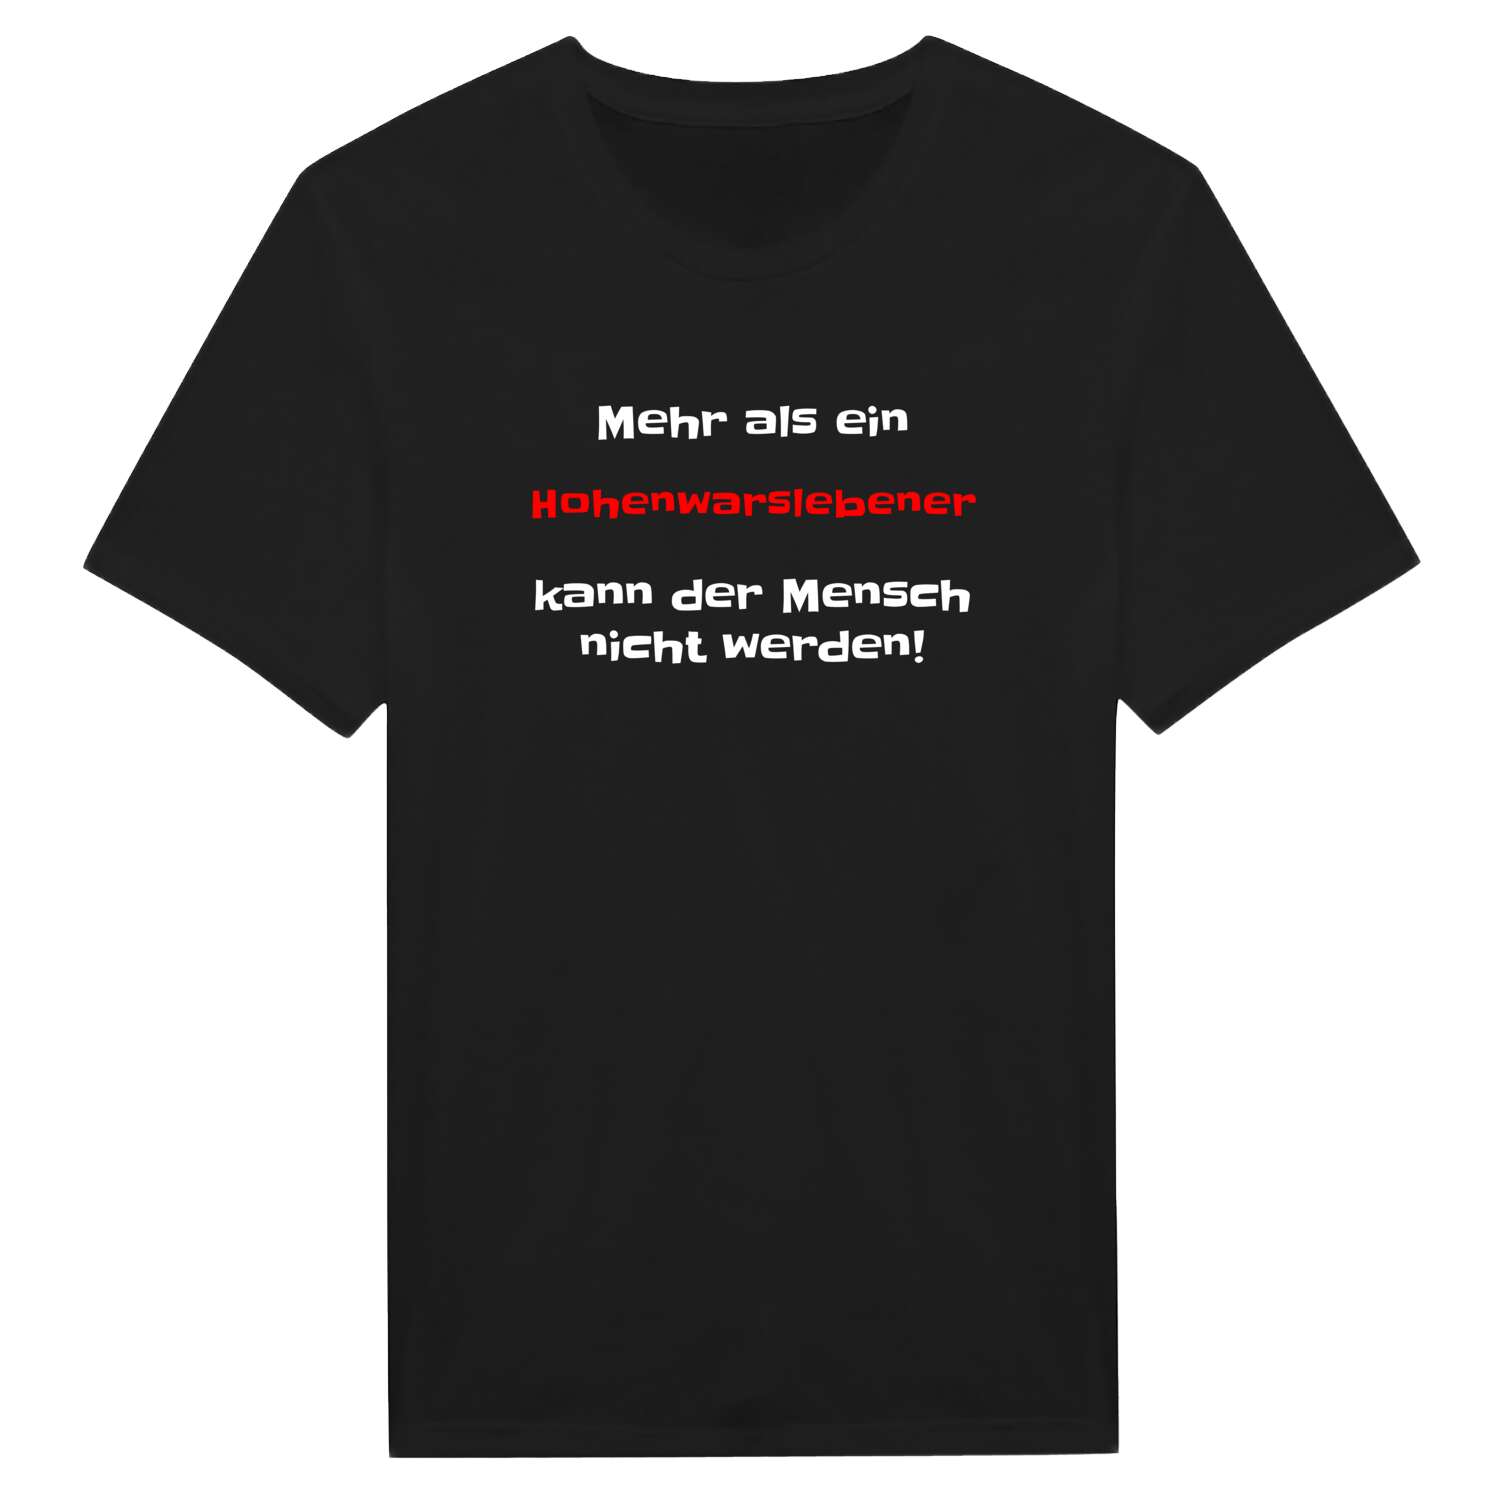 Hohenwarsleben T-Shirt »Mehr als ein«